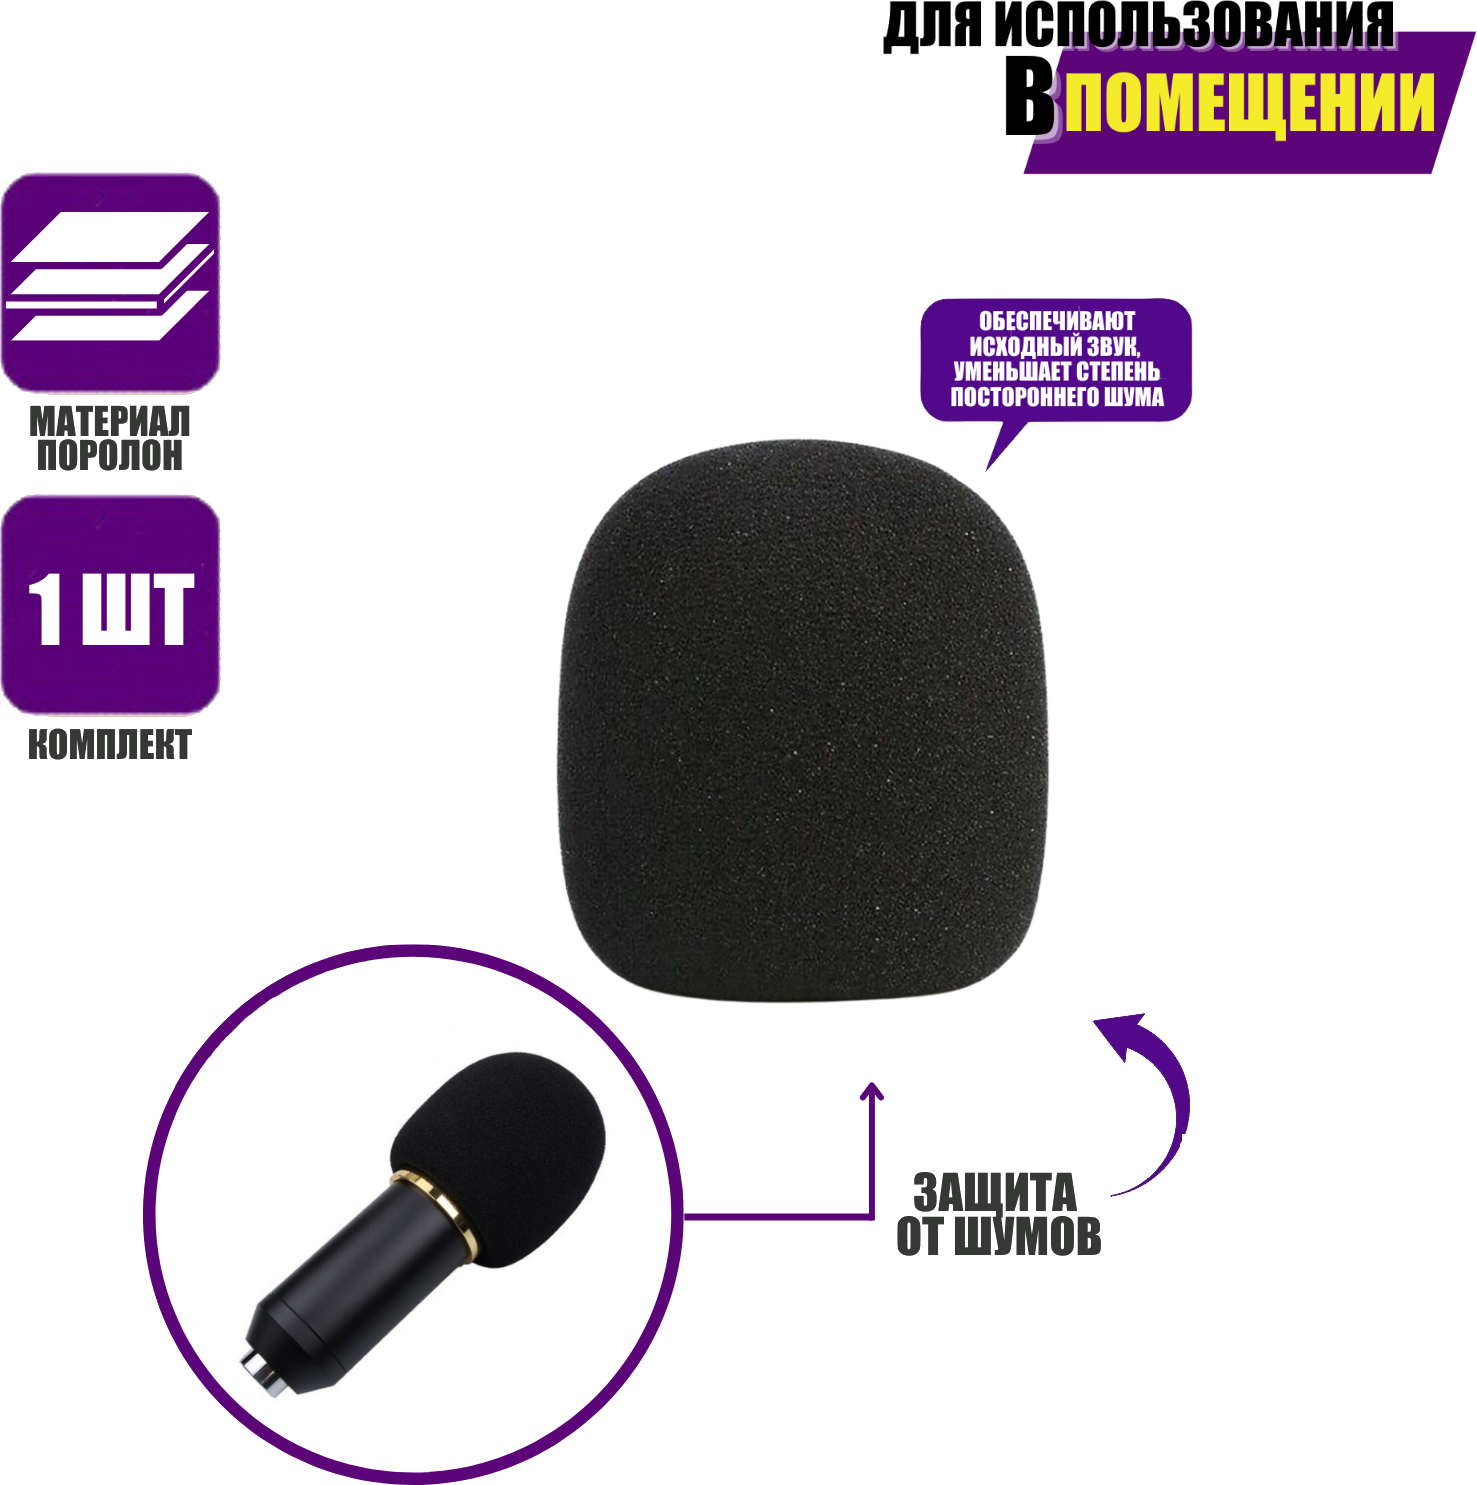 Ветрозащитная насадка для ручного микрофона поролоновая